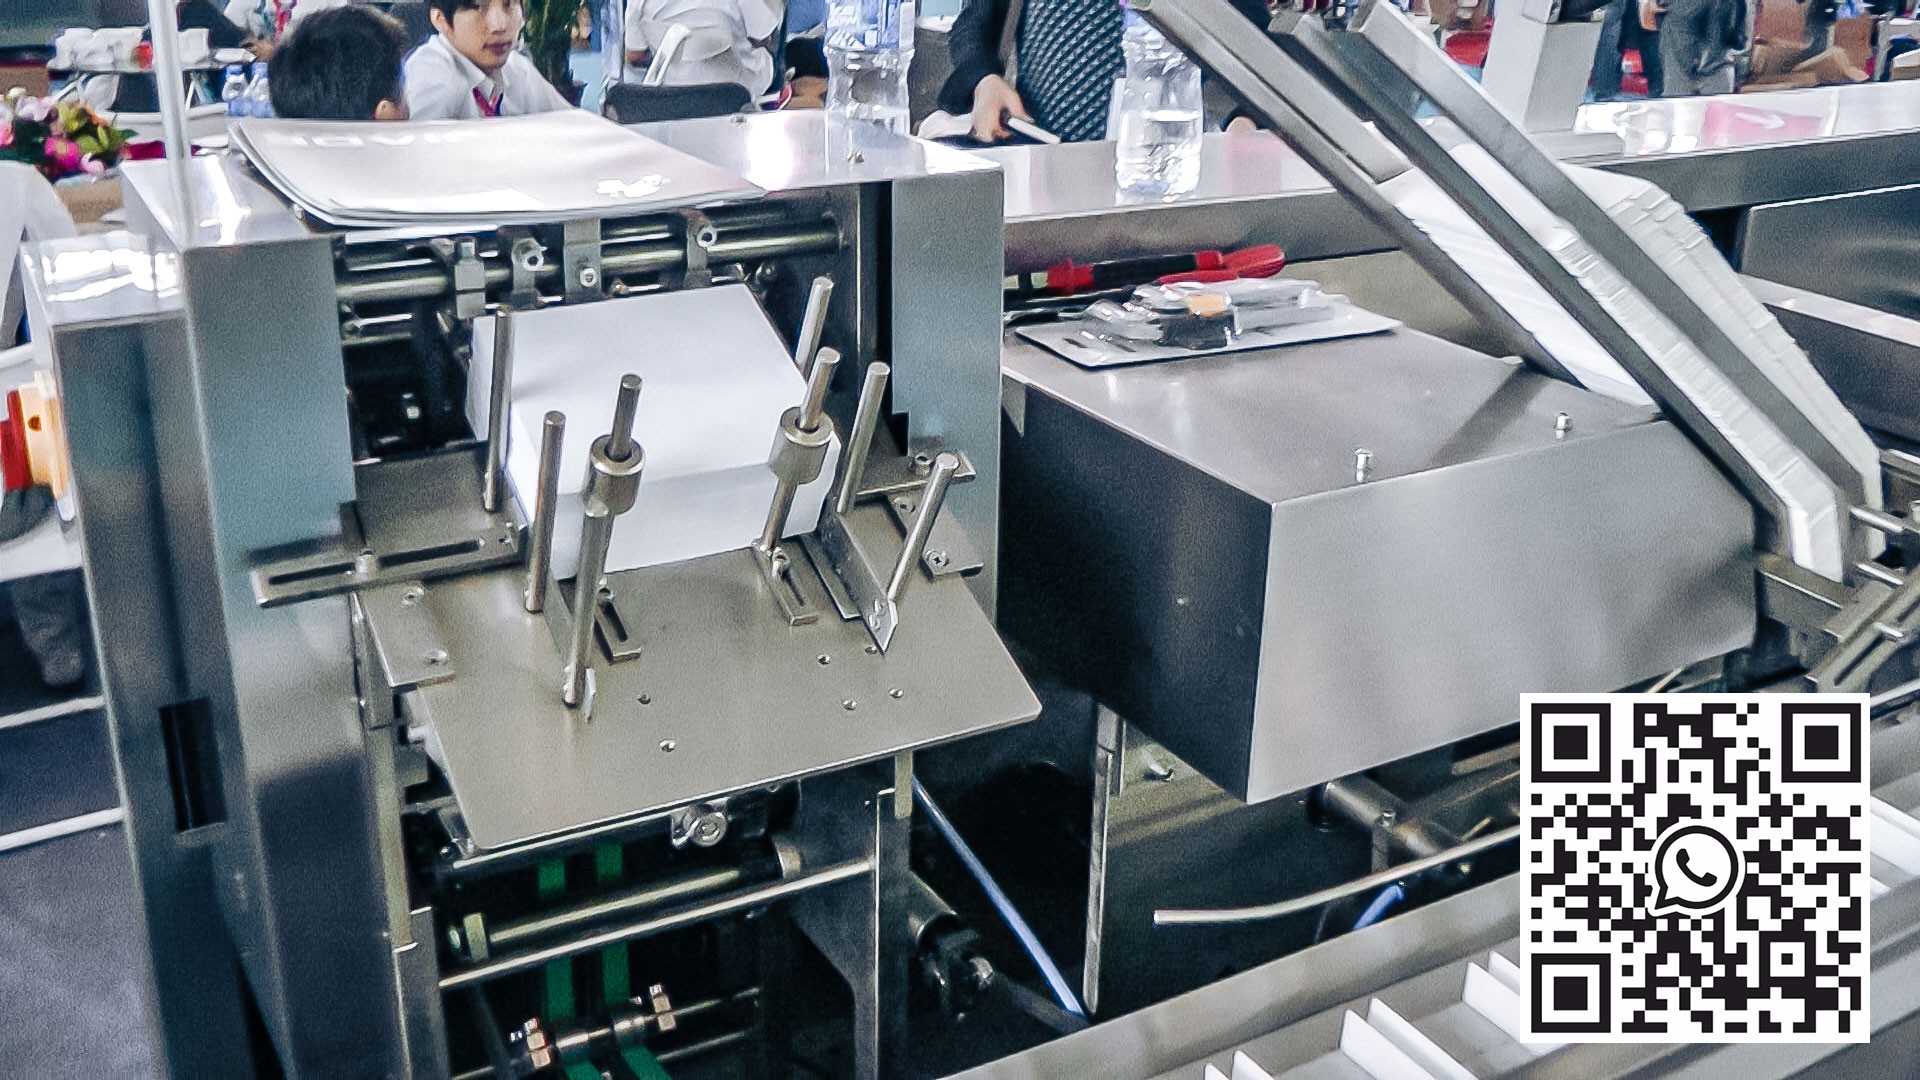 Kartonovací stroj na automatické balení blistrů s tabletami ve farmaceutické výrobě